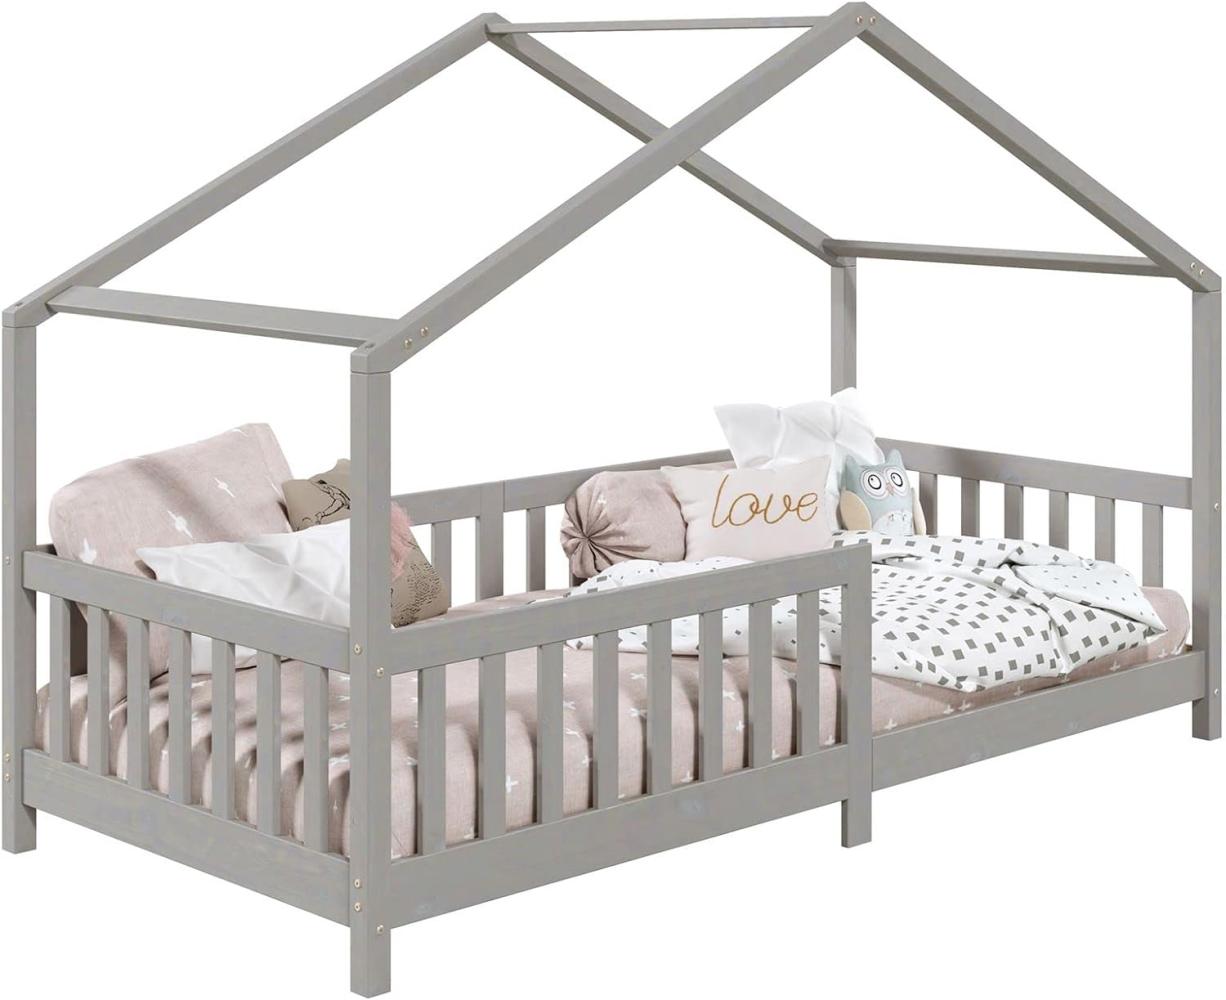 IDIMEX Hausbett LISAN aus massiver Kiefer in grau, schönes Montessori Bett in 90 x 200 cm, stabiles Kinderbett mit Rausfallschutz und Dach Bild 1